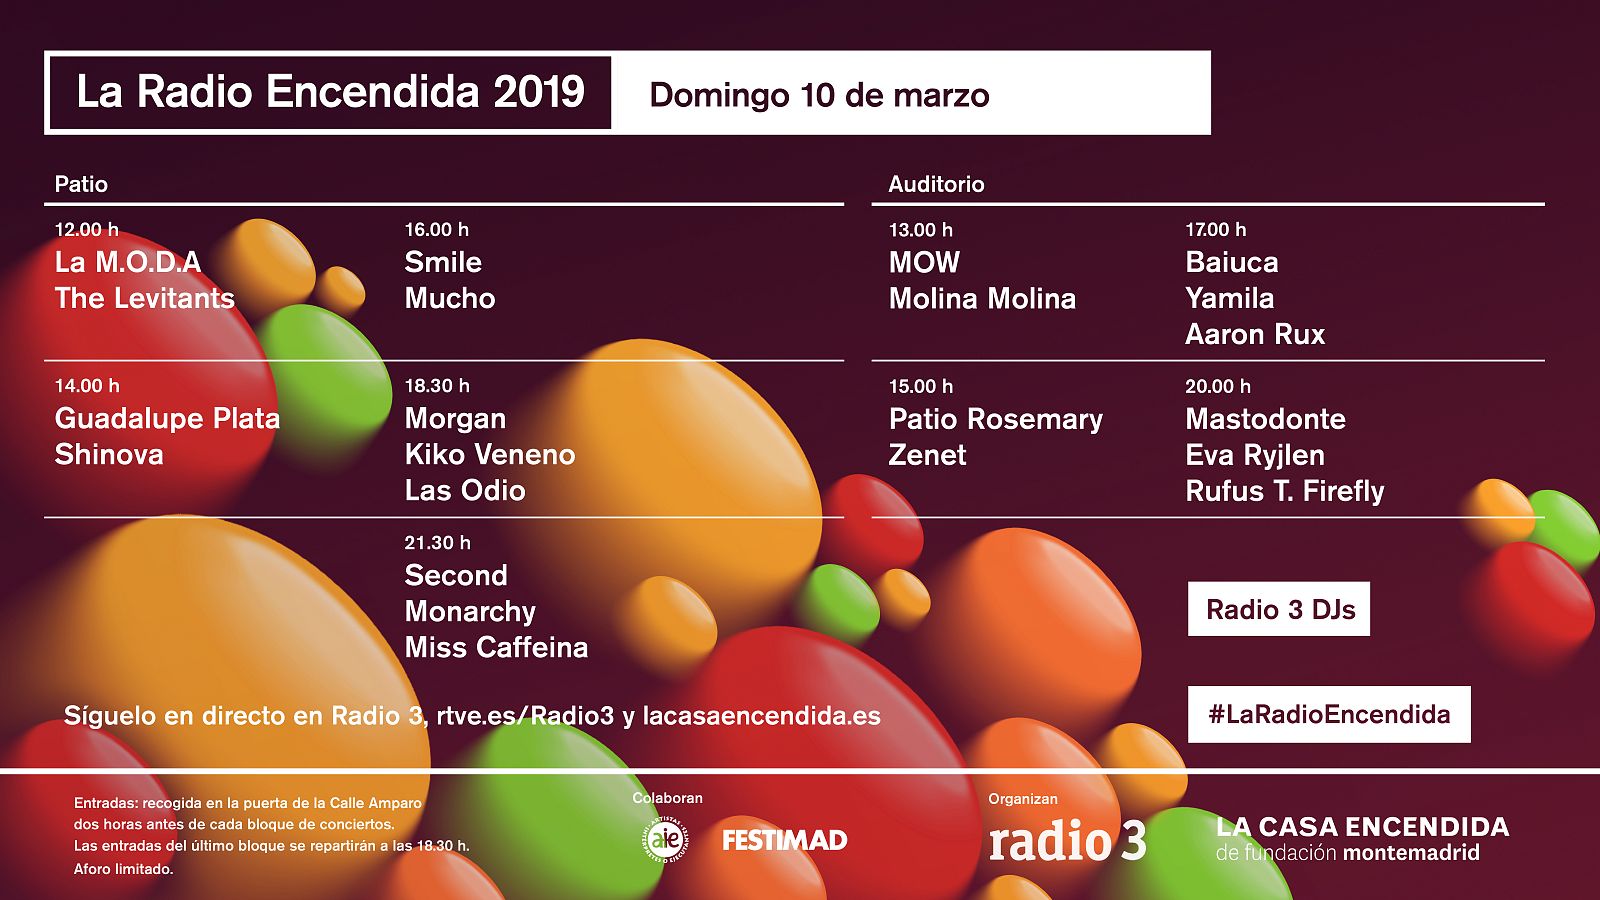 La Radio Encendida 2019